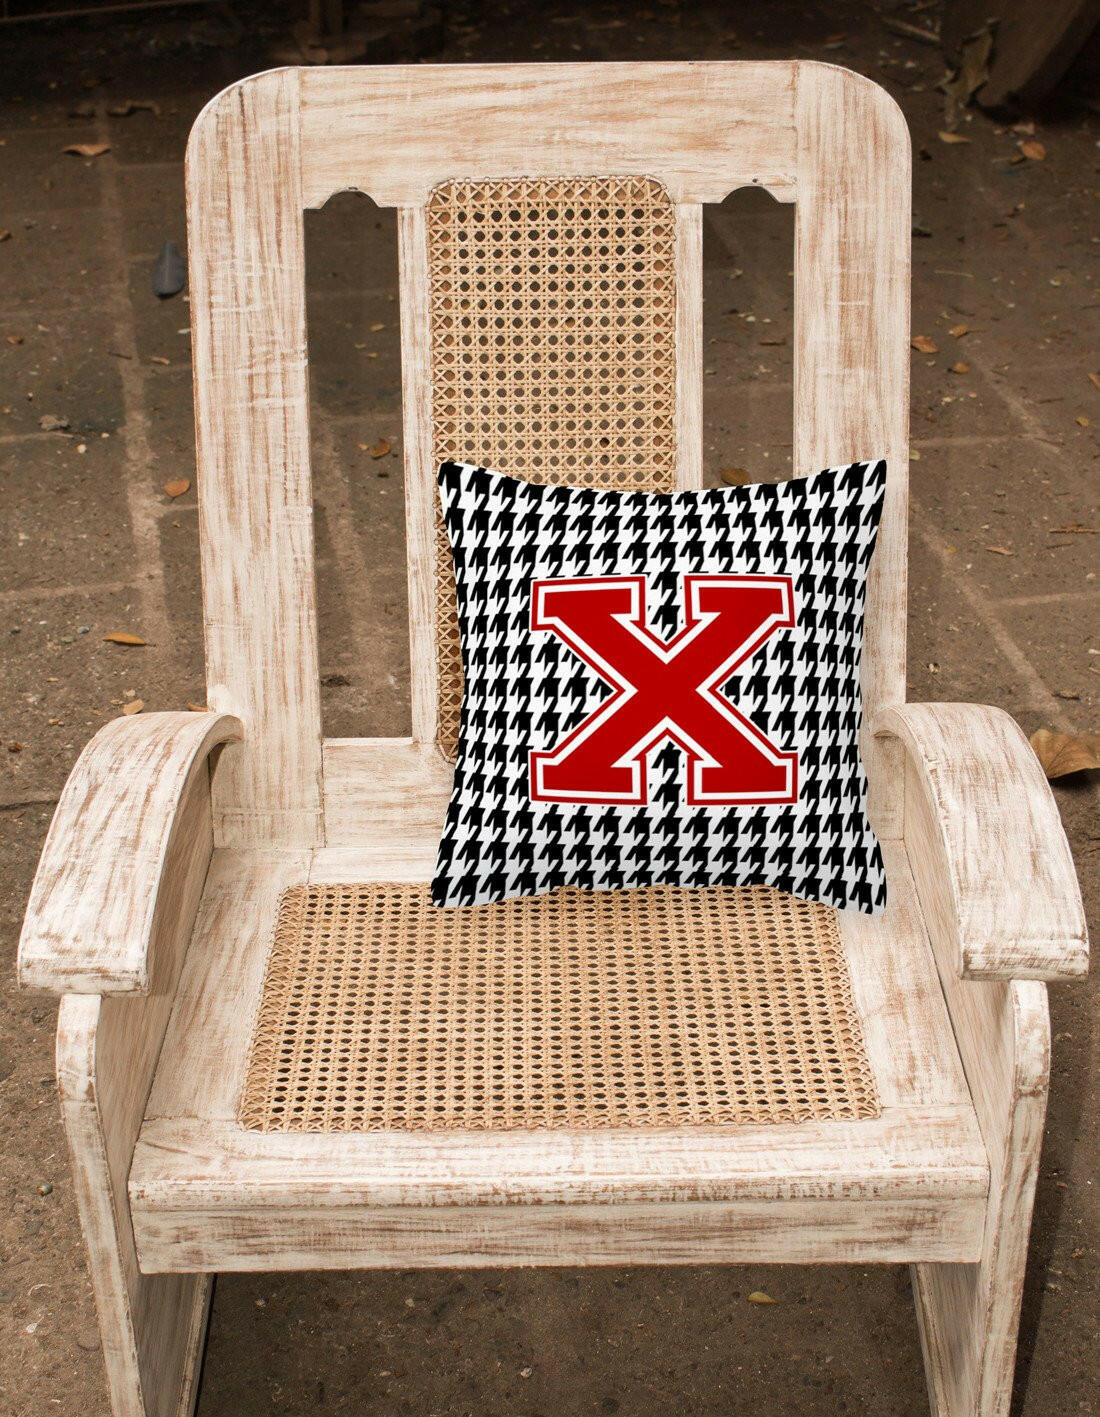 Monogram - Initial X Houndstooth Decorative   Canvas Fabric Pillow CJ1021 - the-store.com